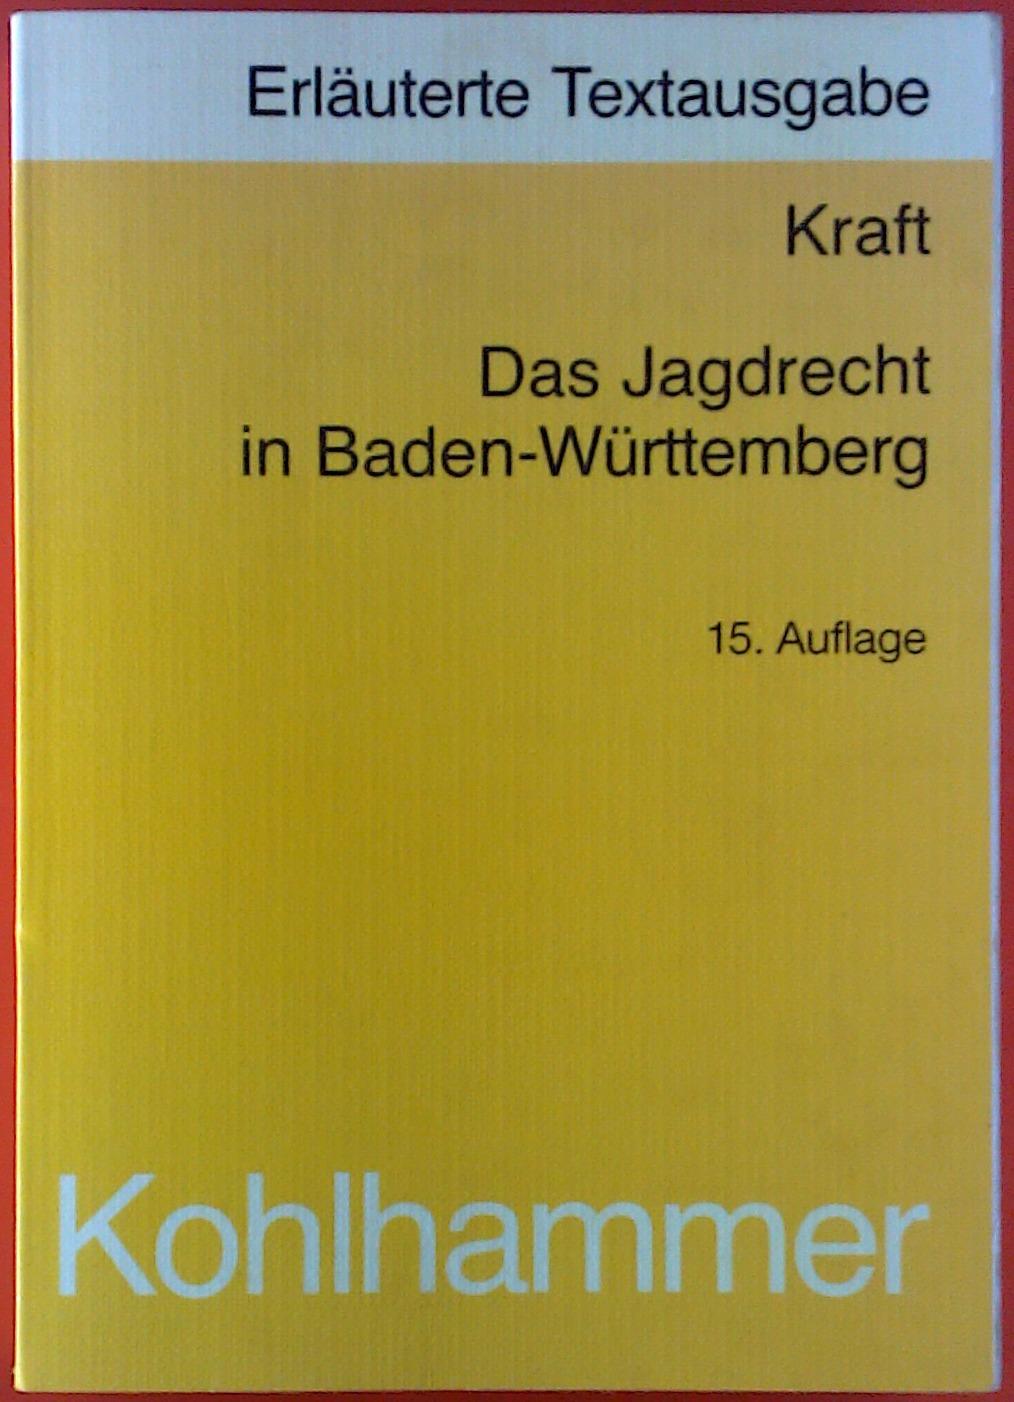 Das Jagdrecht in Baden-Württemberg. Erläuterte Textausgabe nebst Verweisungen. - Karl Kraft